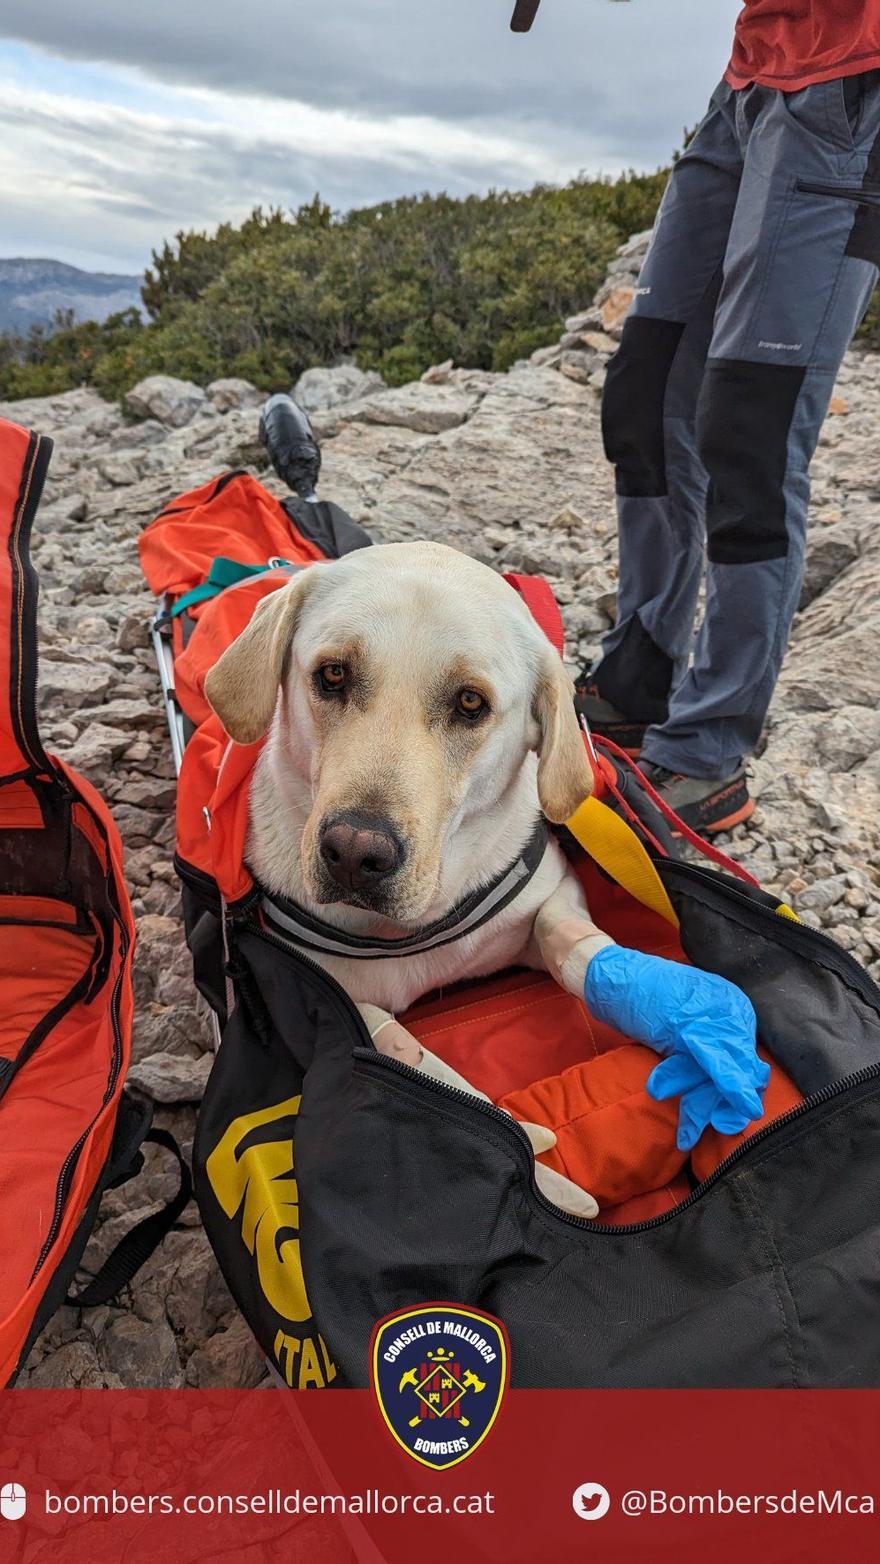 Feuerwehr auf Mallorca rettet auf einer Wanderung verletzten Labrador